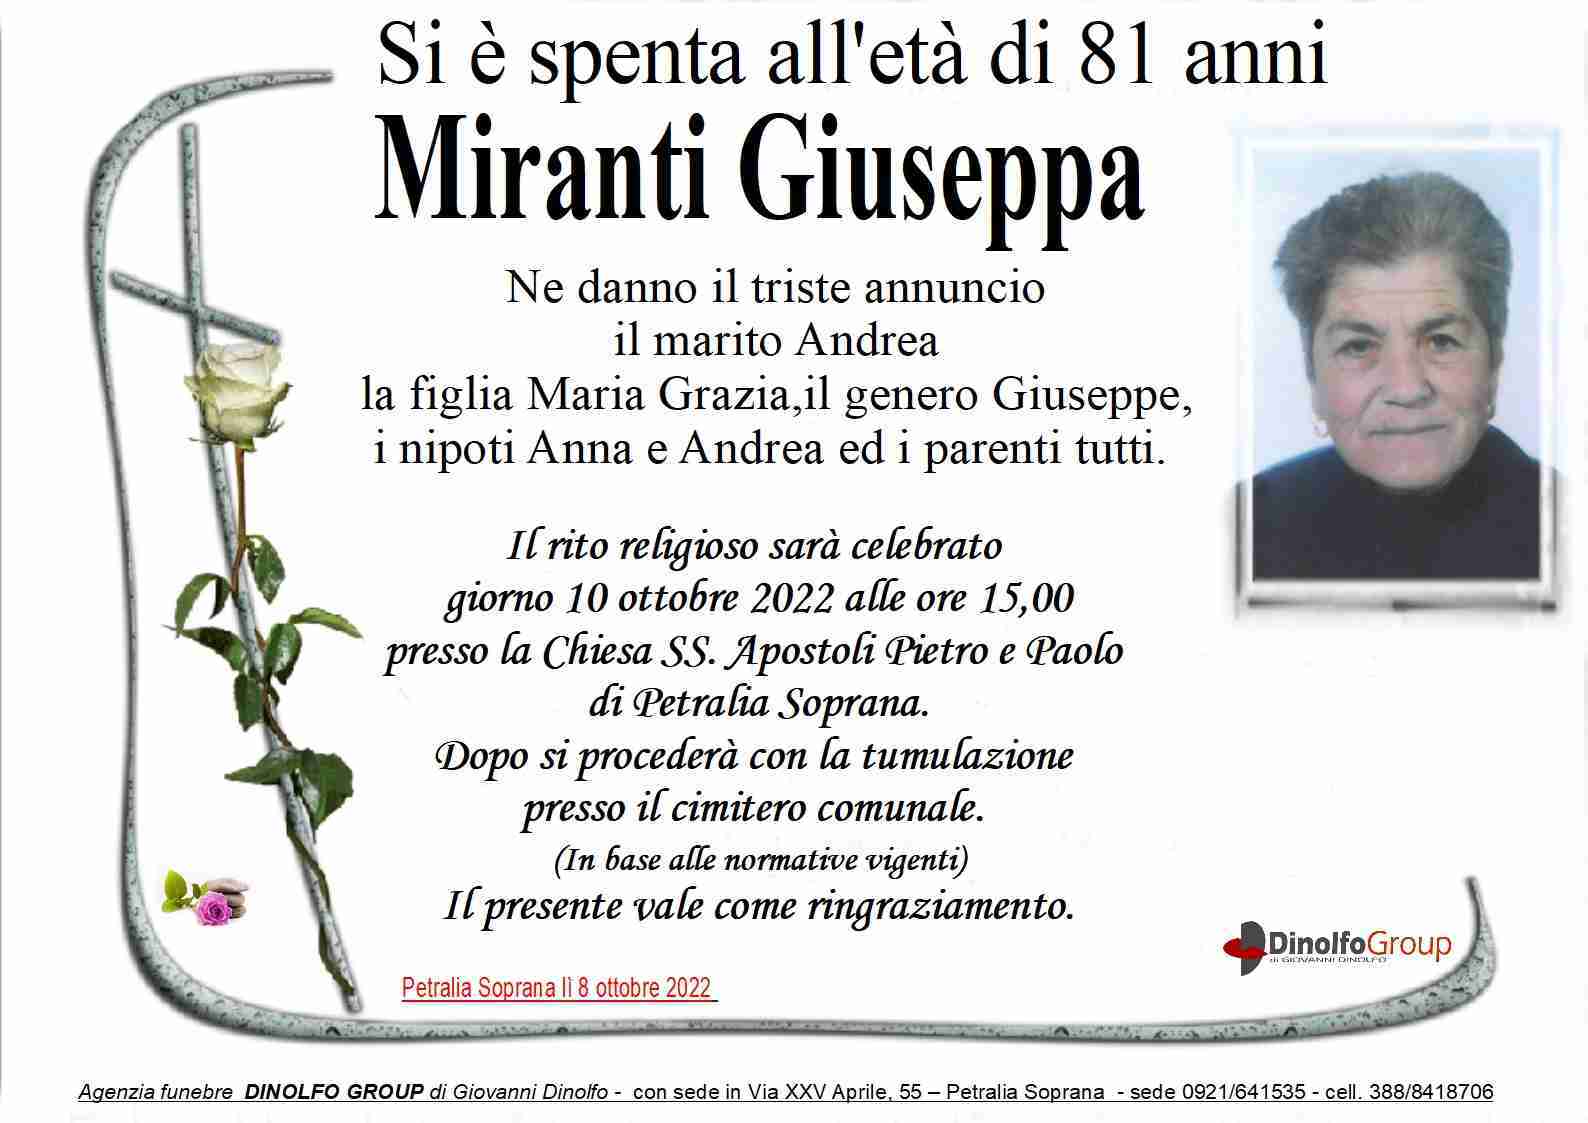 Giuseppa Miranti